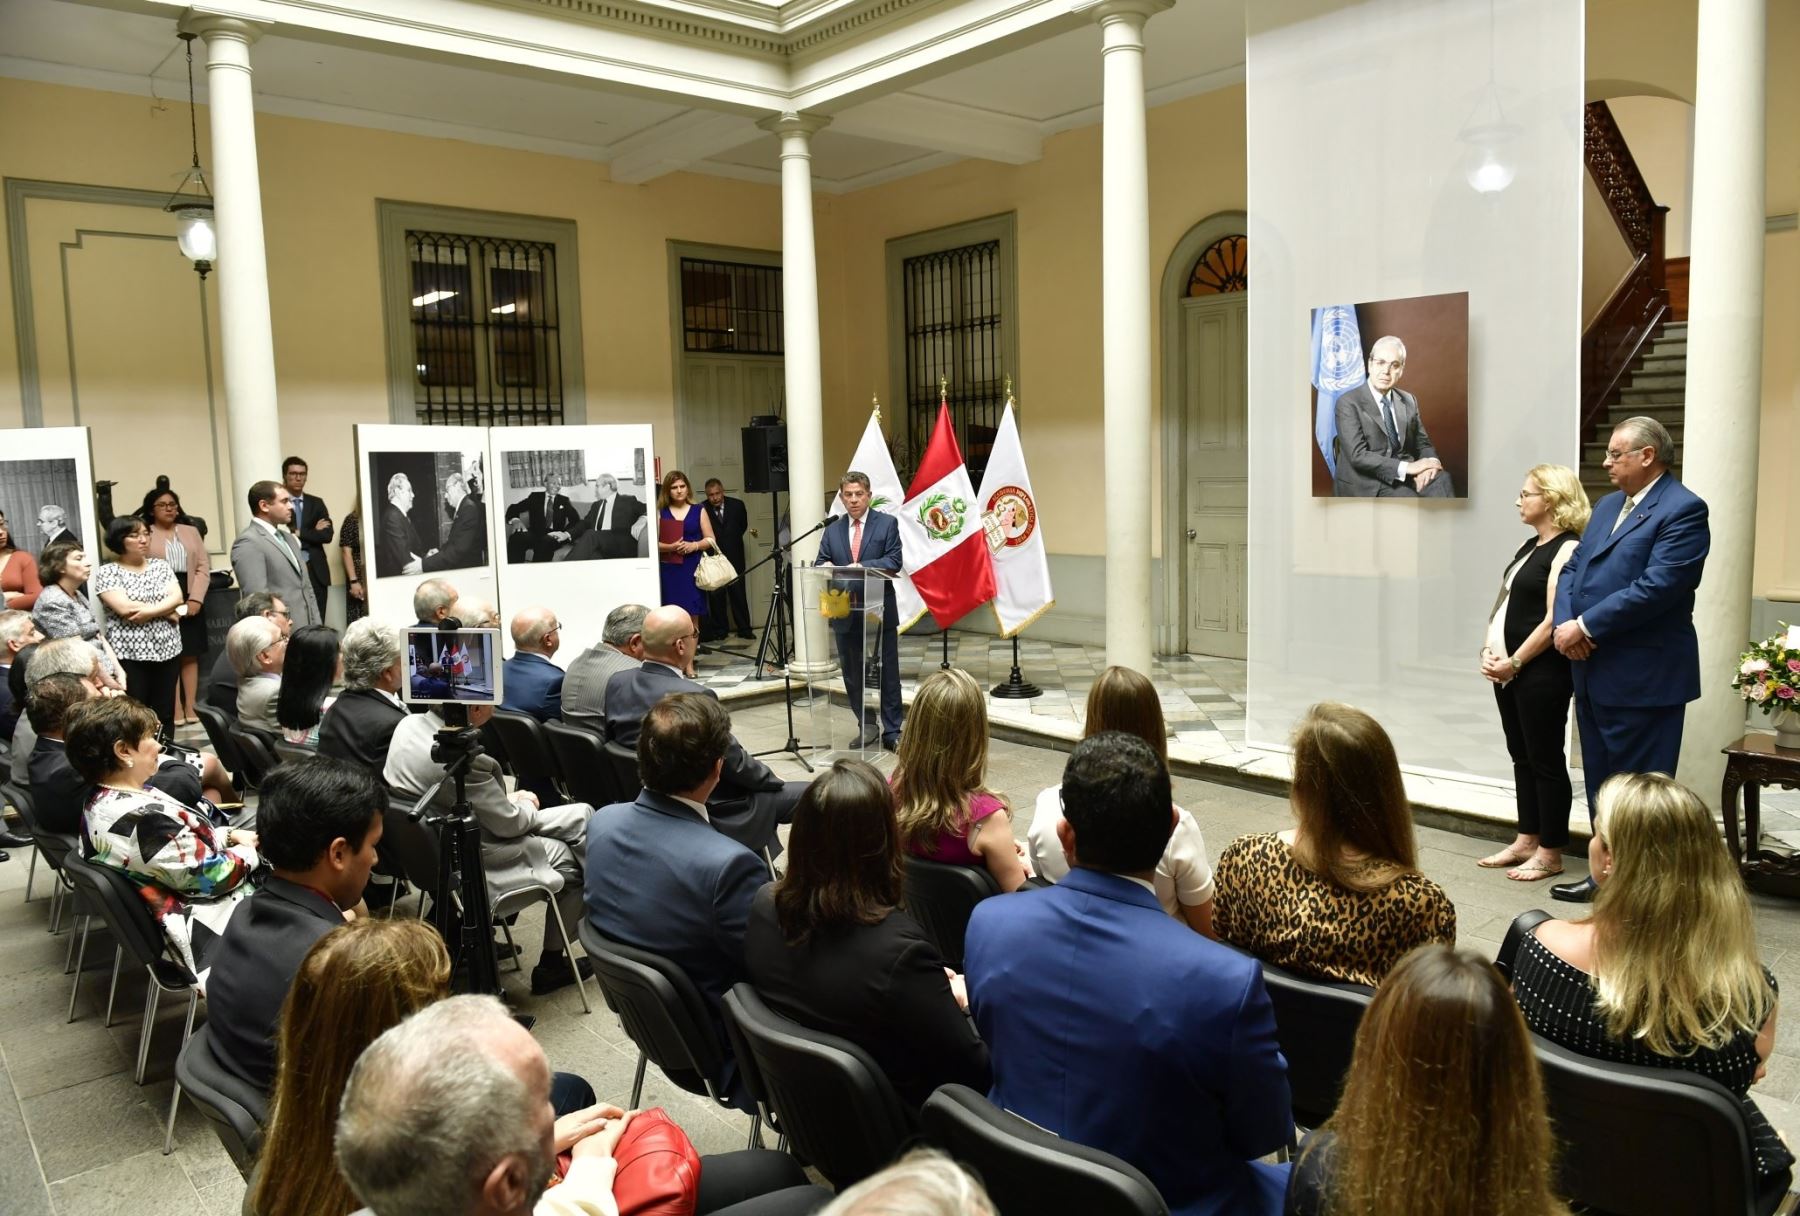 La inauguración de la muestra "Embajador Javier Pérez De Cuéllar: Tributo a los 100 años de un diplomático ejemplar"